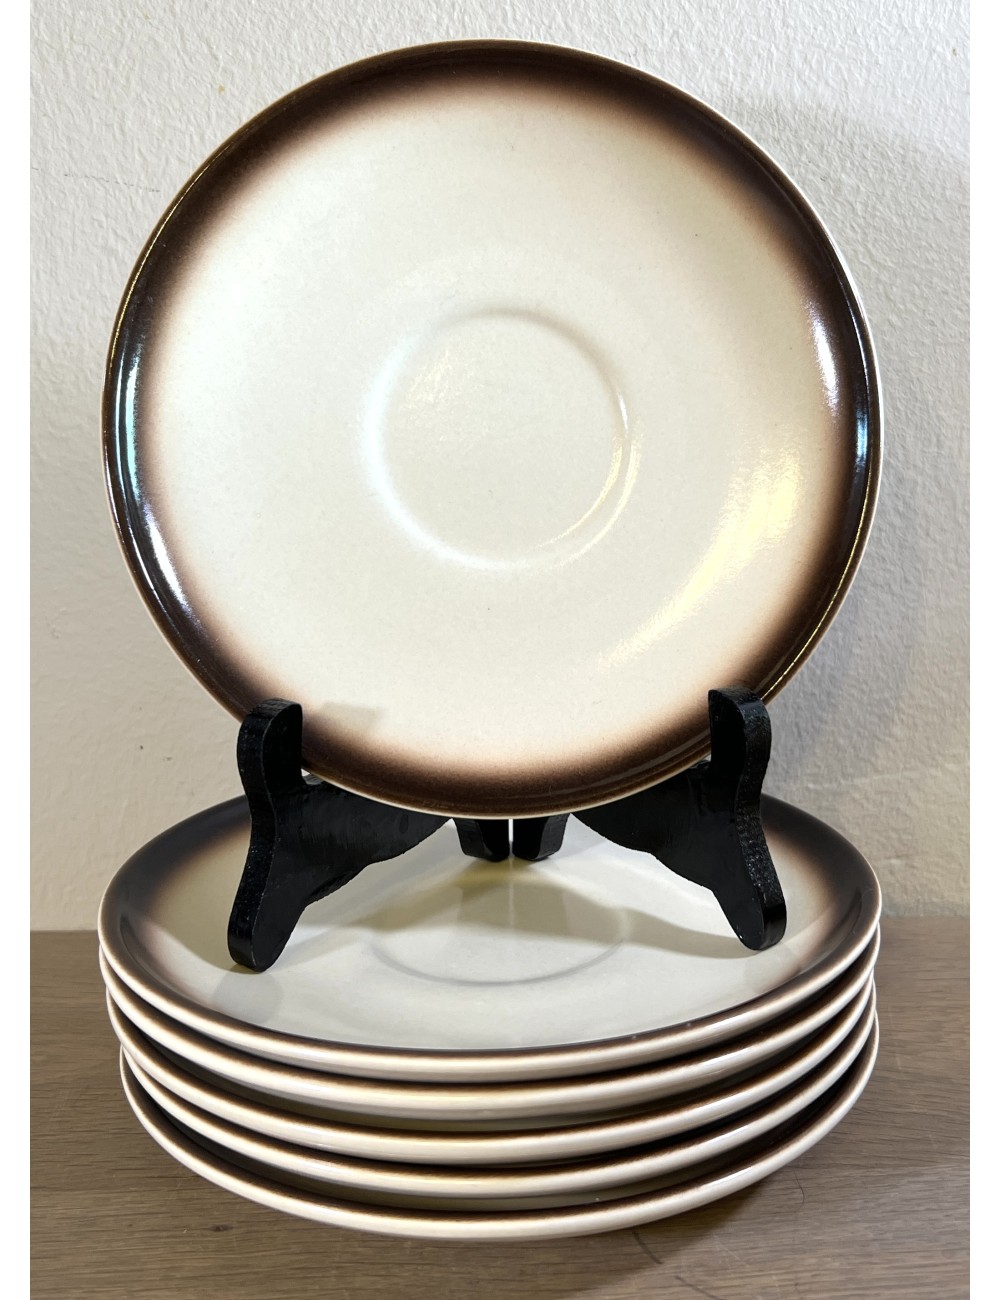 Saucer - large model (large cups or soup bowls?) - Boch - décor SIERRA